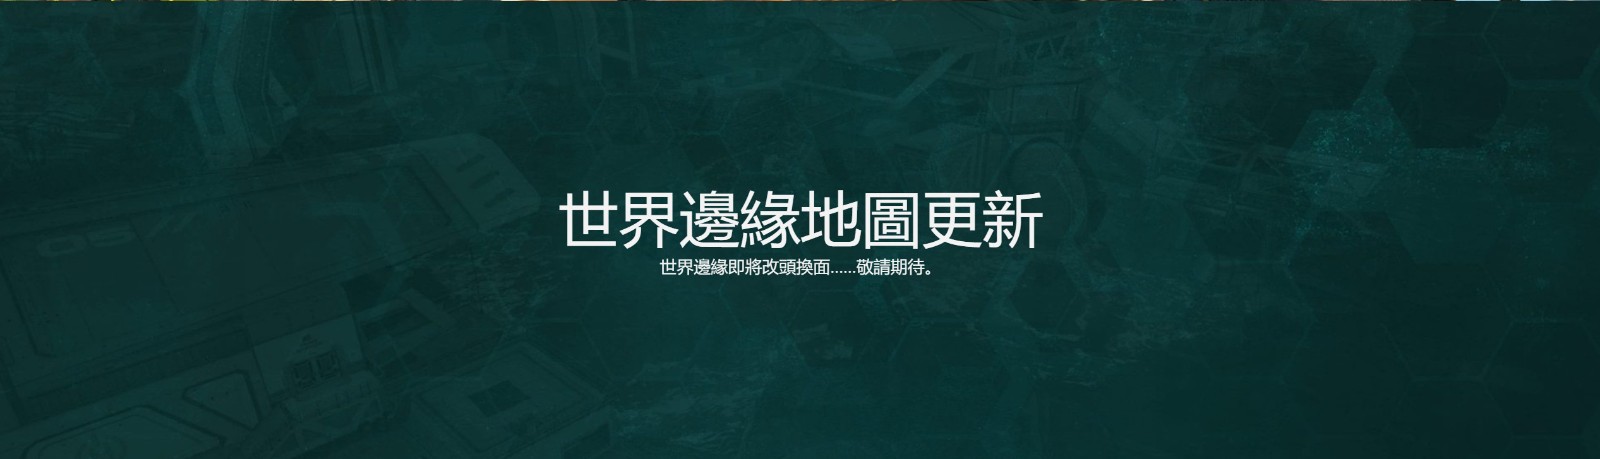 《Apex英雄》第十赛季外域故事“变形记”中文预告 新英雄席尔登场